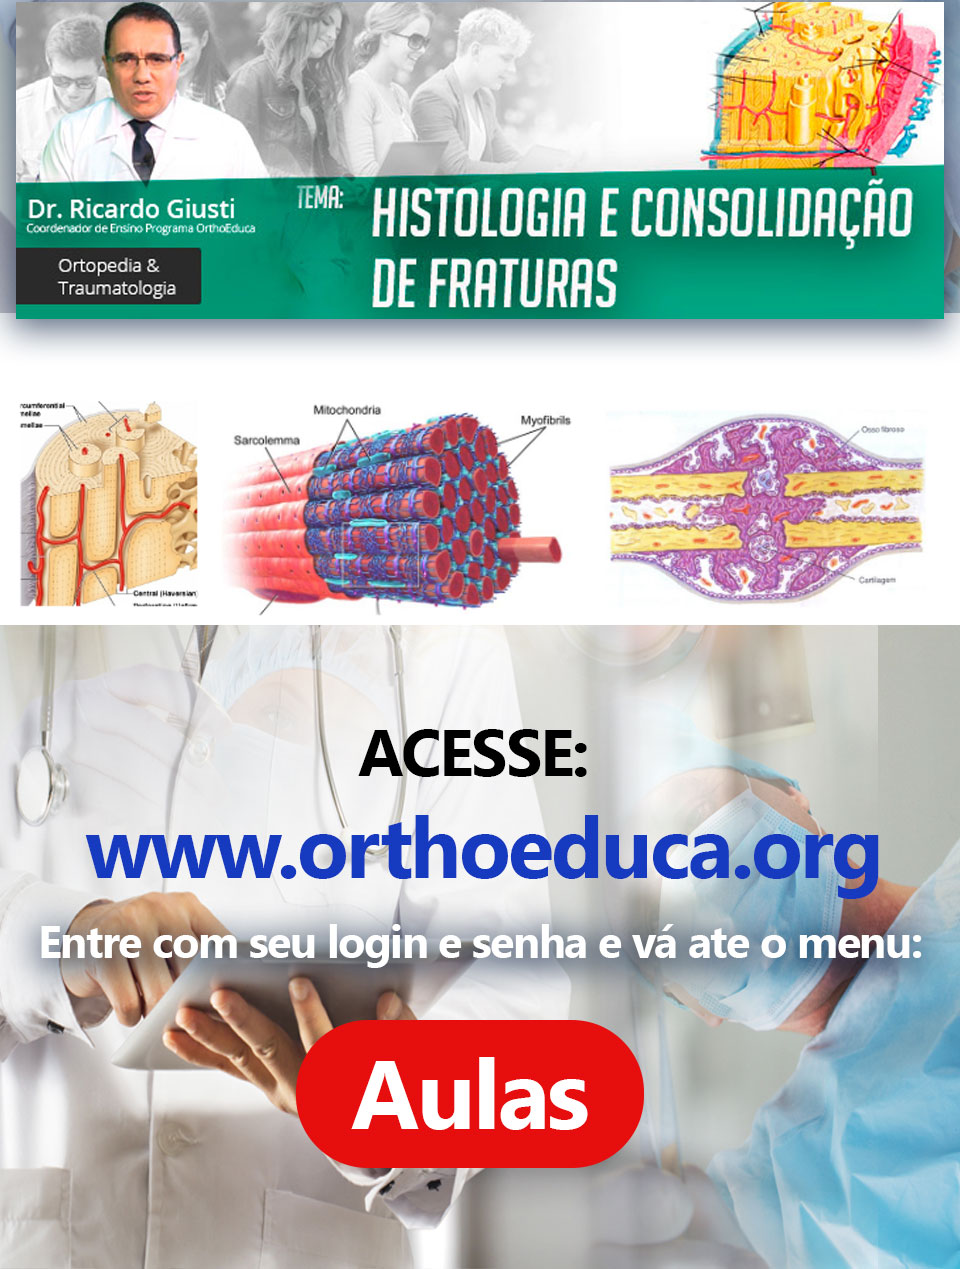 Histologia e Consolidação de Fraturas: OrthoEduca convida: Vamos estudar juntos?